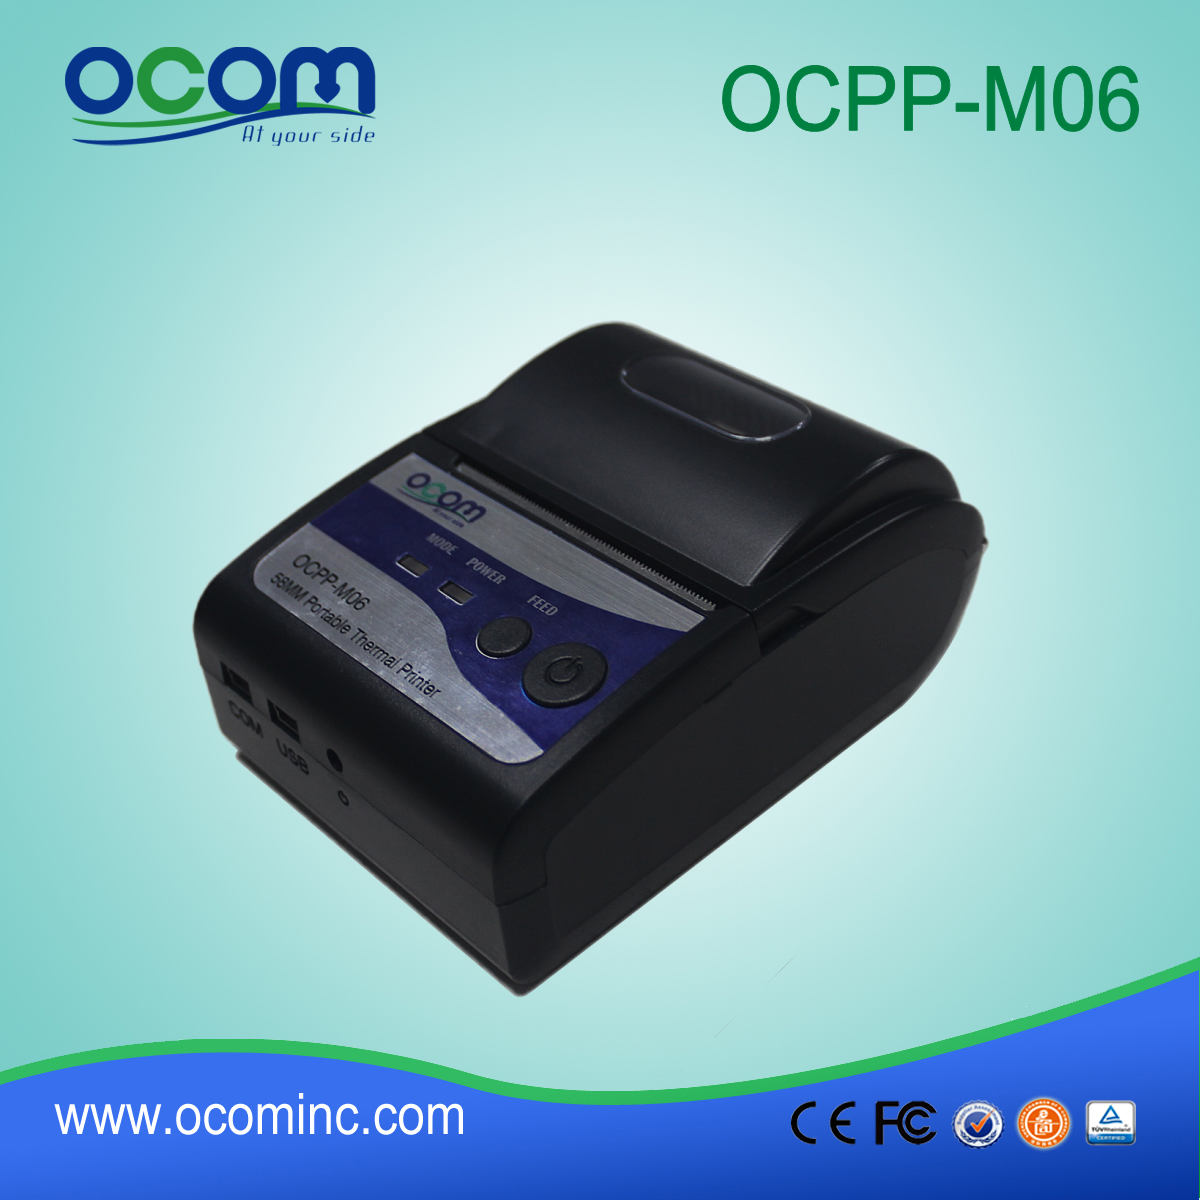 OCPP-M06: cheapeast صينيون طابعة OCOM 58mm ونقاط البيع، 58mm والطابعة نقاط البيع